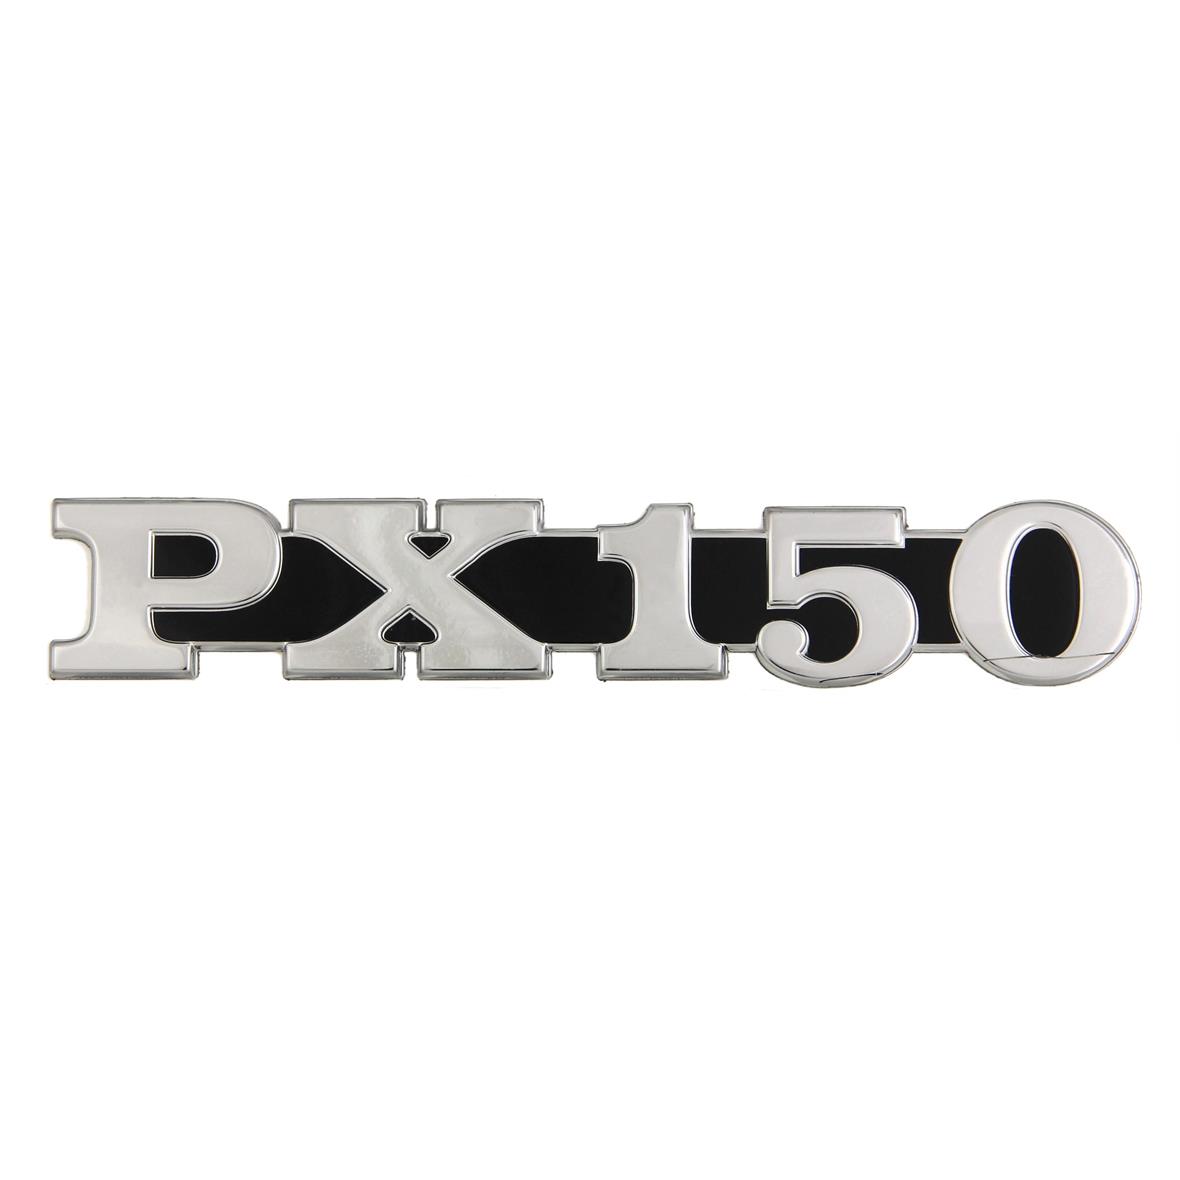 Vespa PX 150 2011 Side Panel Badge Left Hand Side